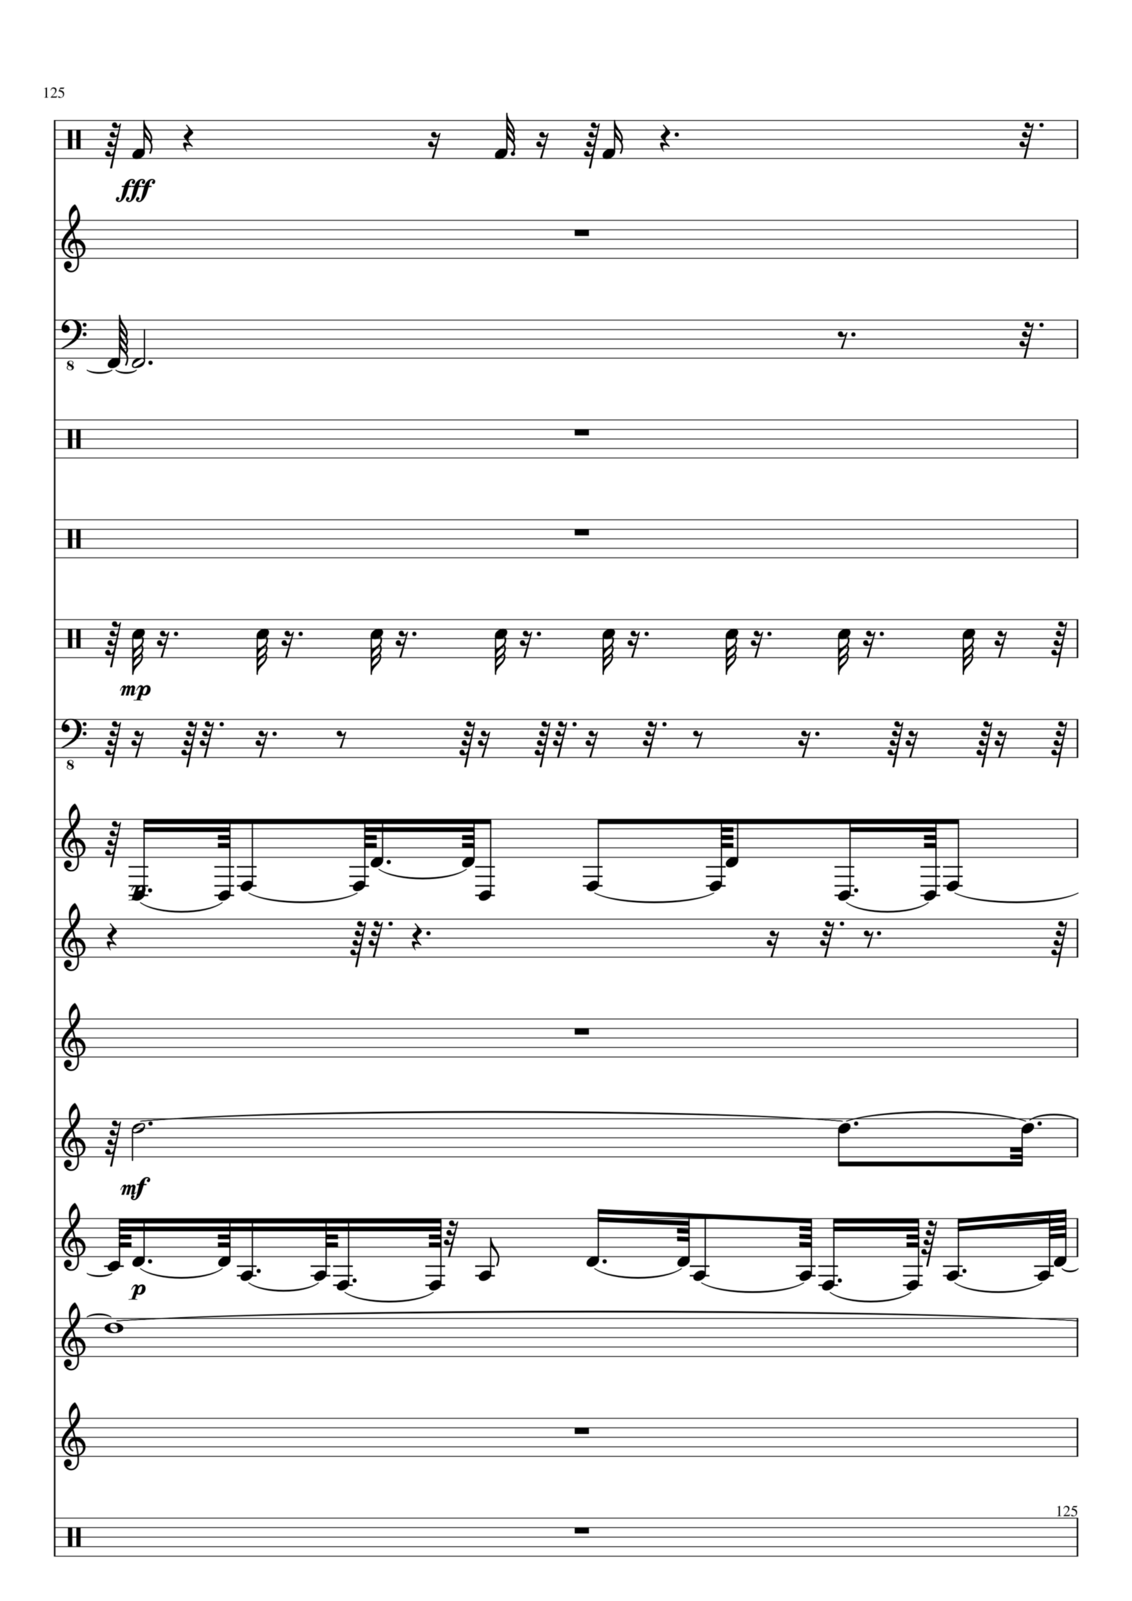 Utro polinyi slide, Image 125